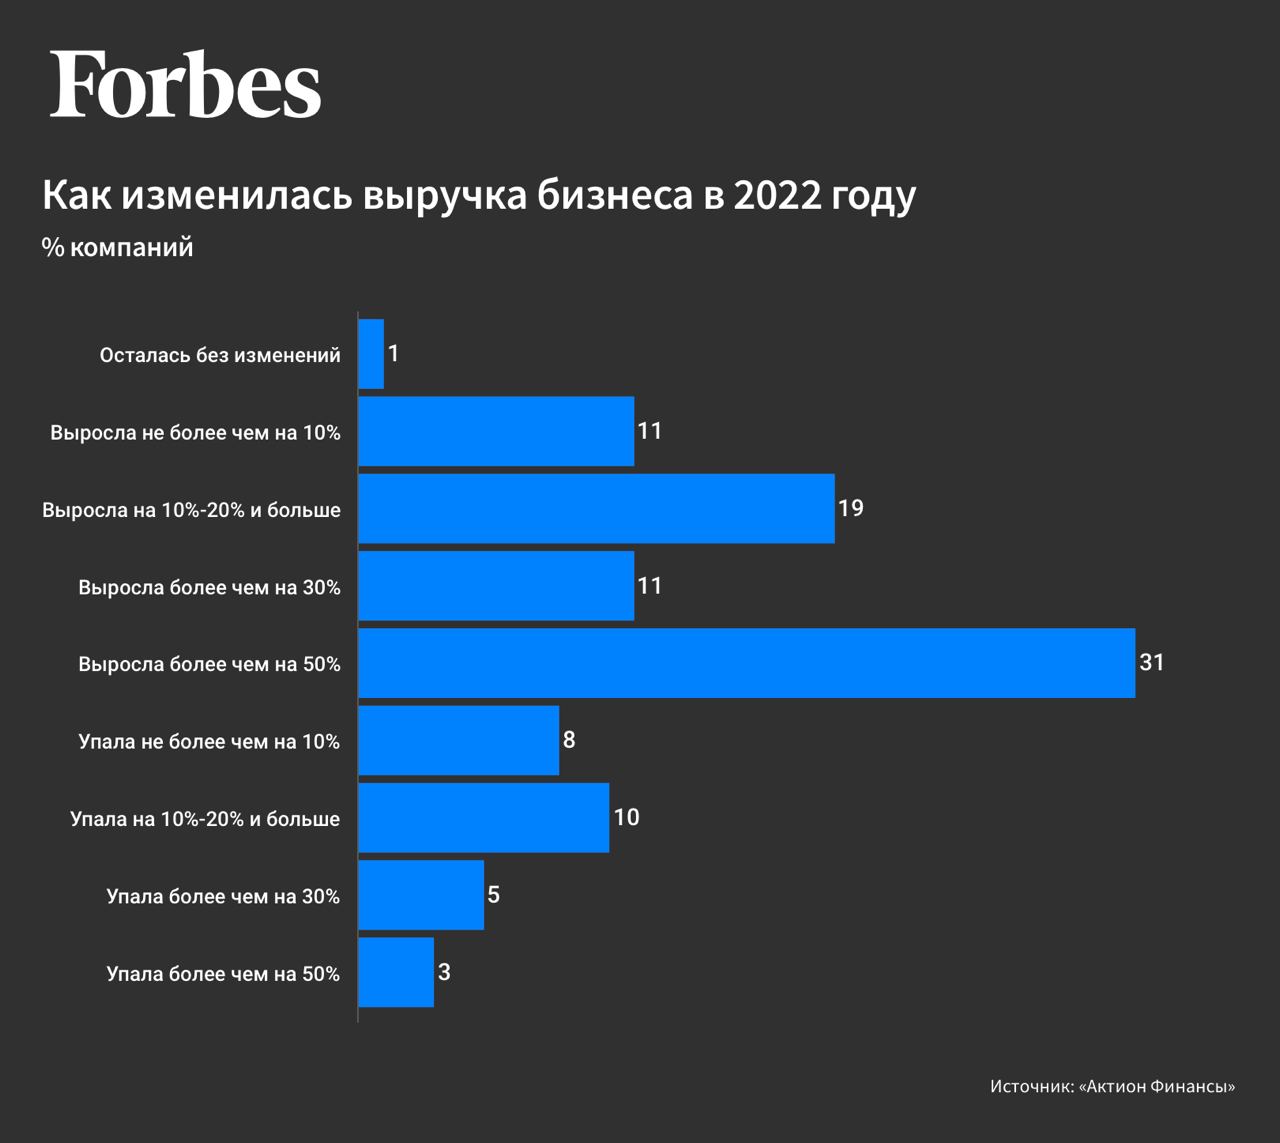 Около 70% российский компаний увеличили выручку в 2022 году